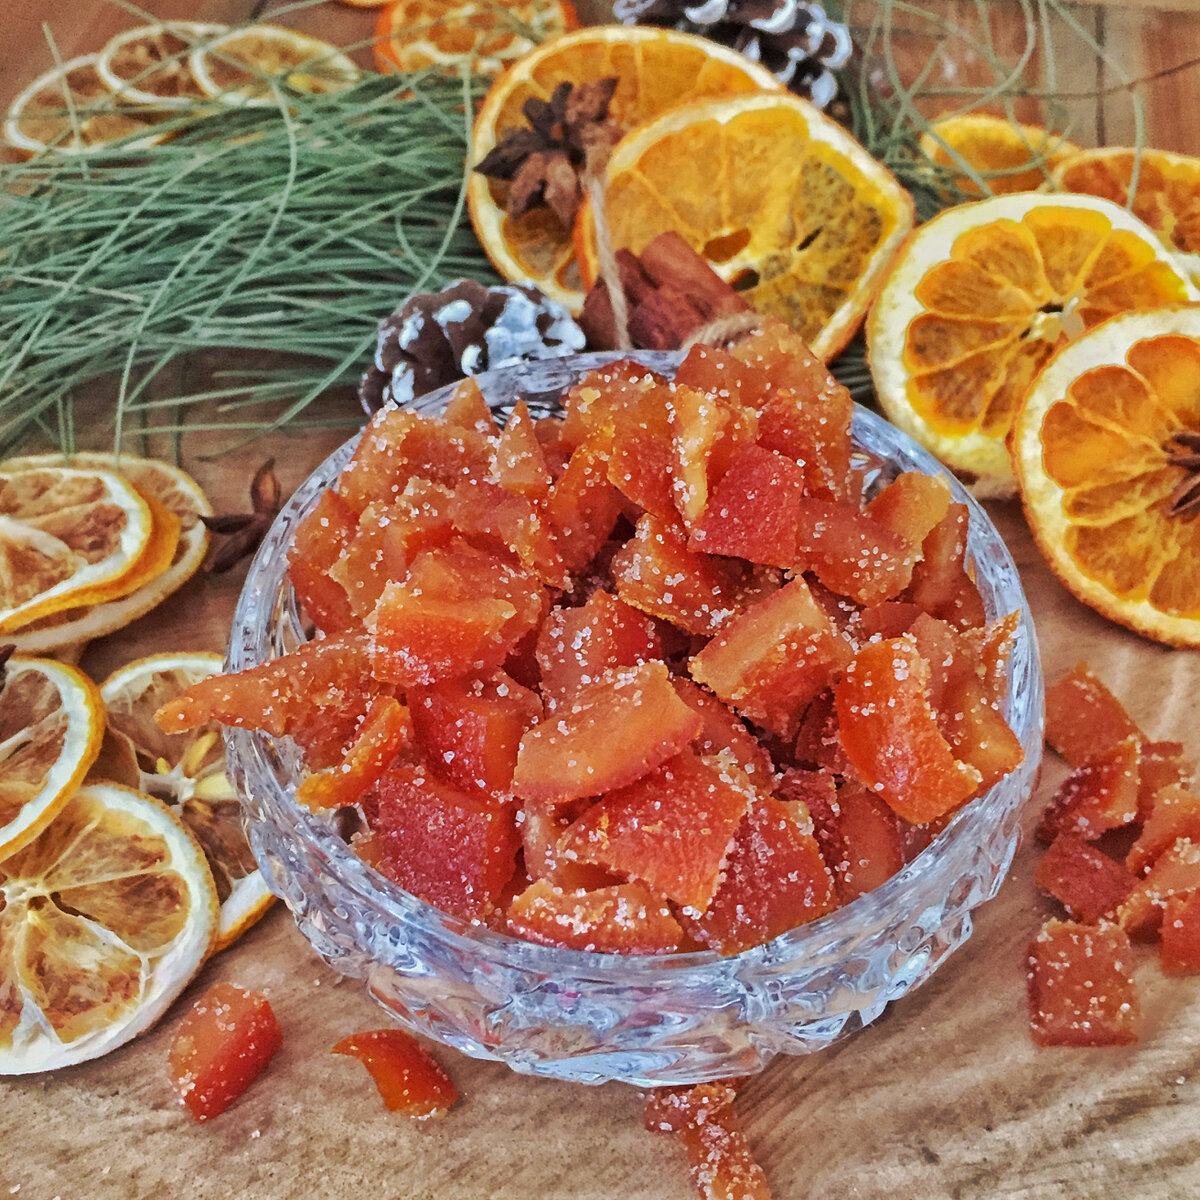 Цукаты из апельсиновых корок: 9 сладких рецептов